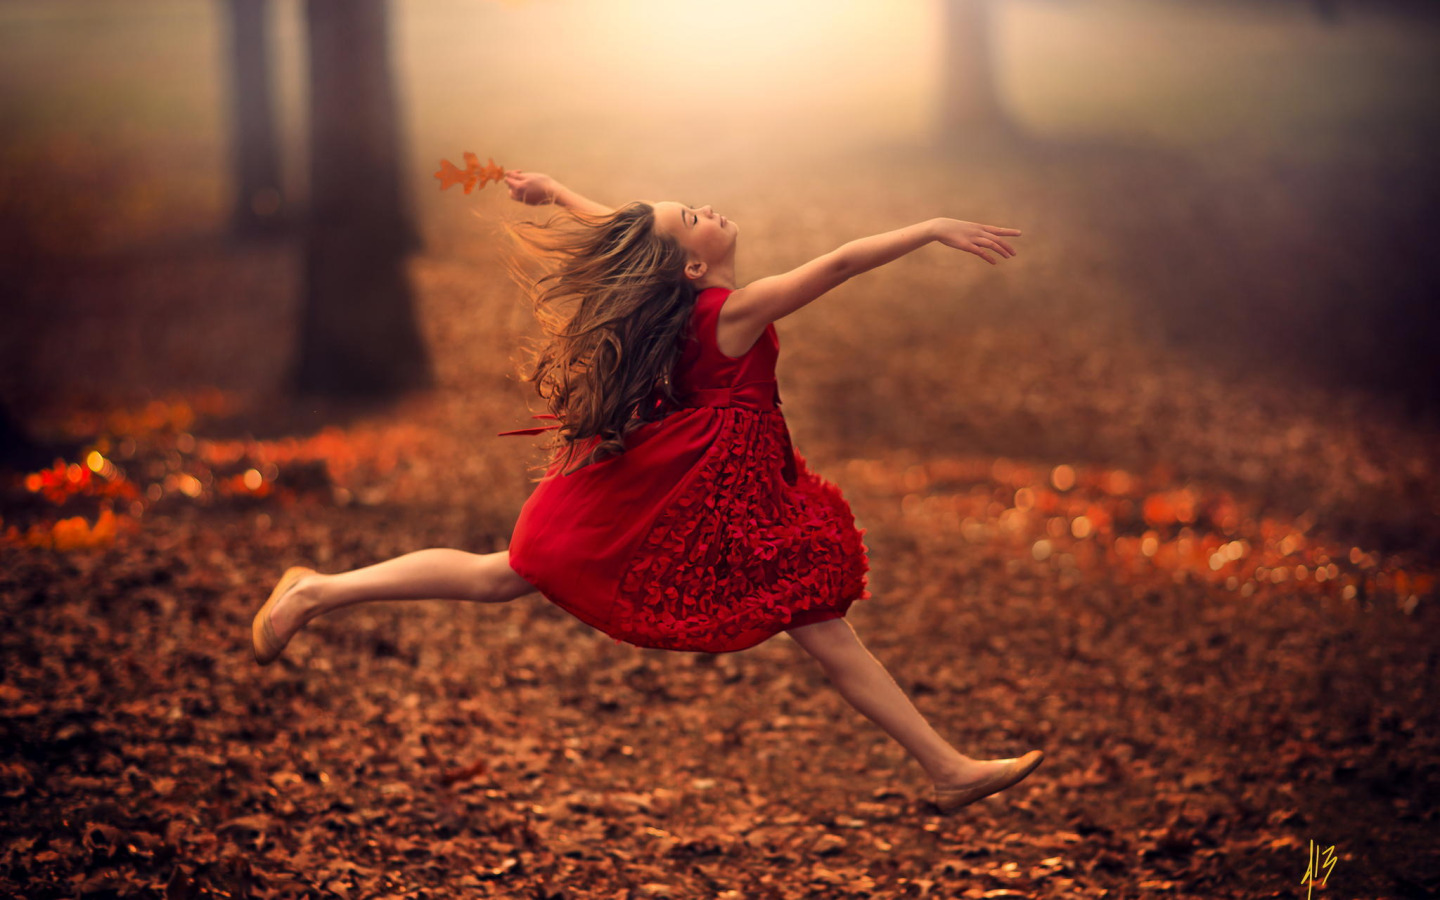 Музыка жизнь танец. Джейк Олсон (Jake Olson), США. Девушка танцует. Девушка бежит в платье. Девушка танцует осень.